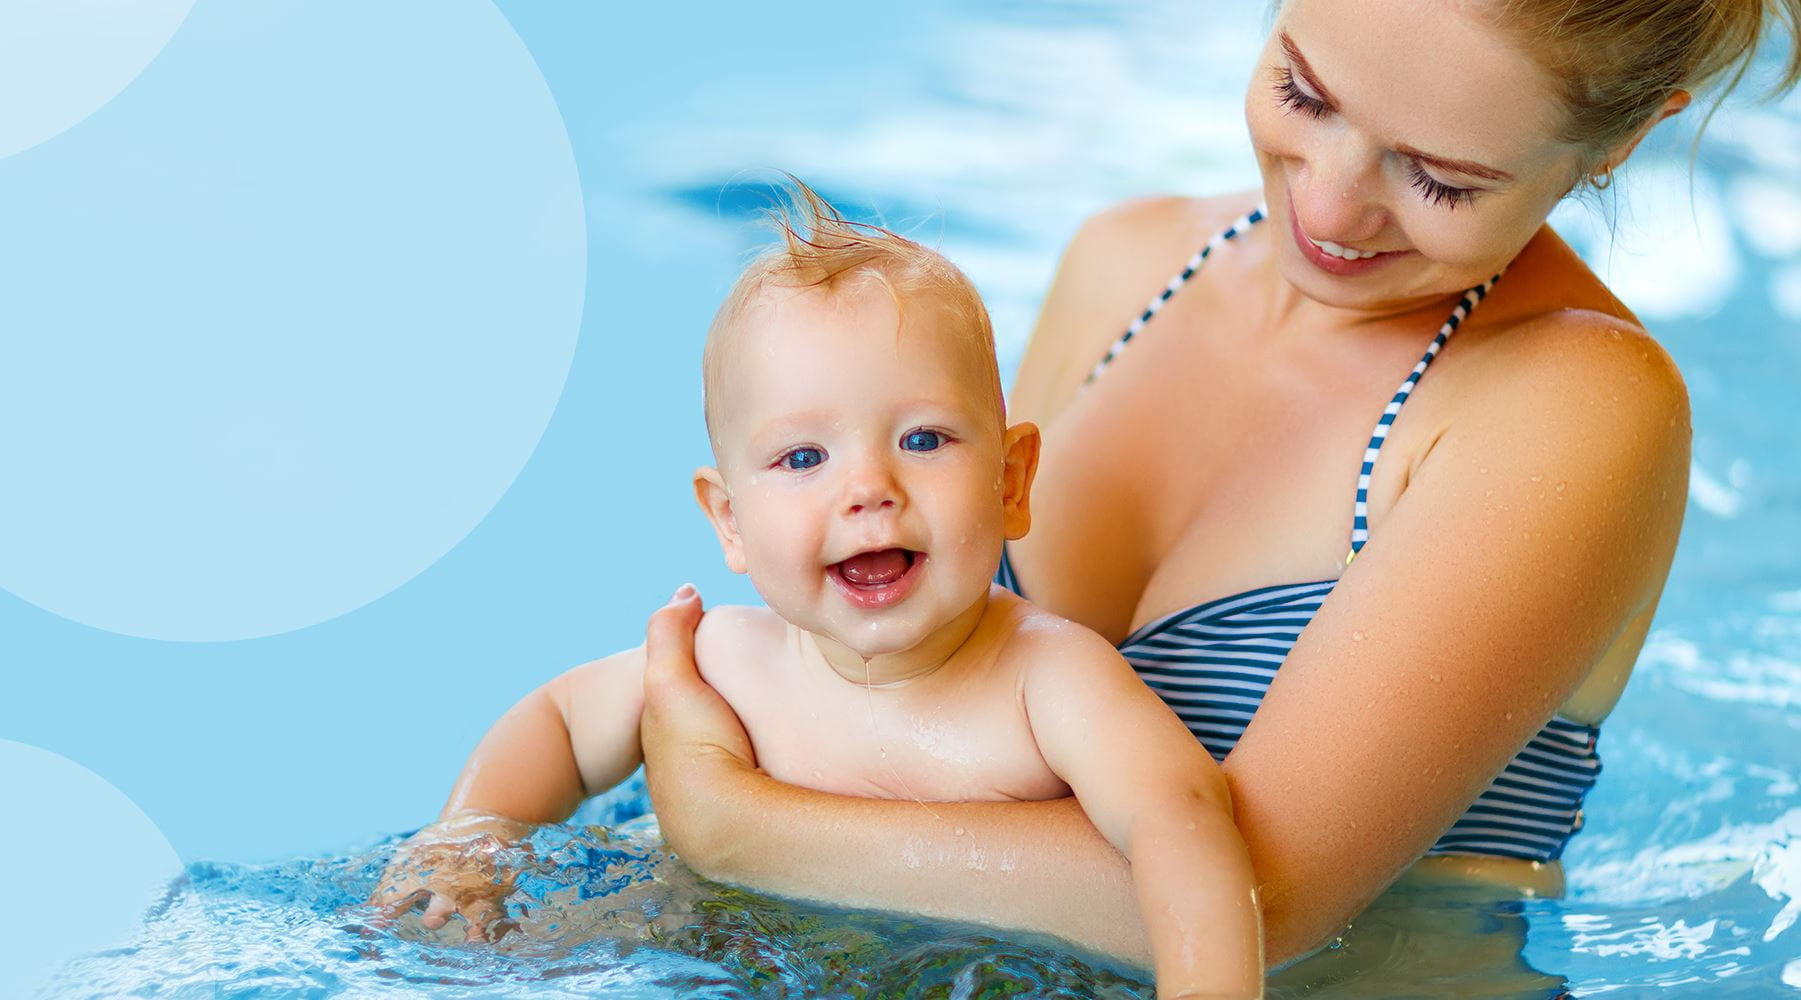 Nauka pływania dla niemowląt. Kiedy na basen z niemowlakiem?